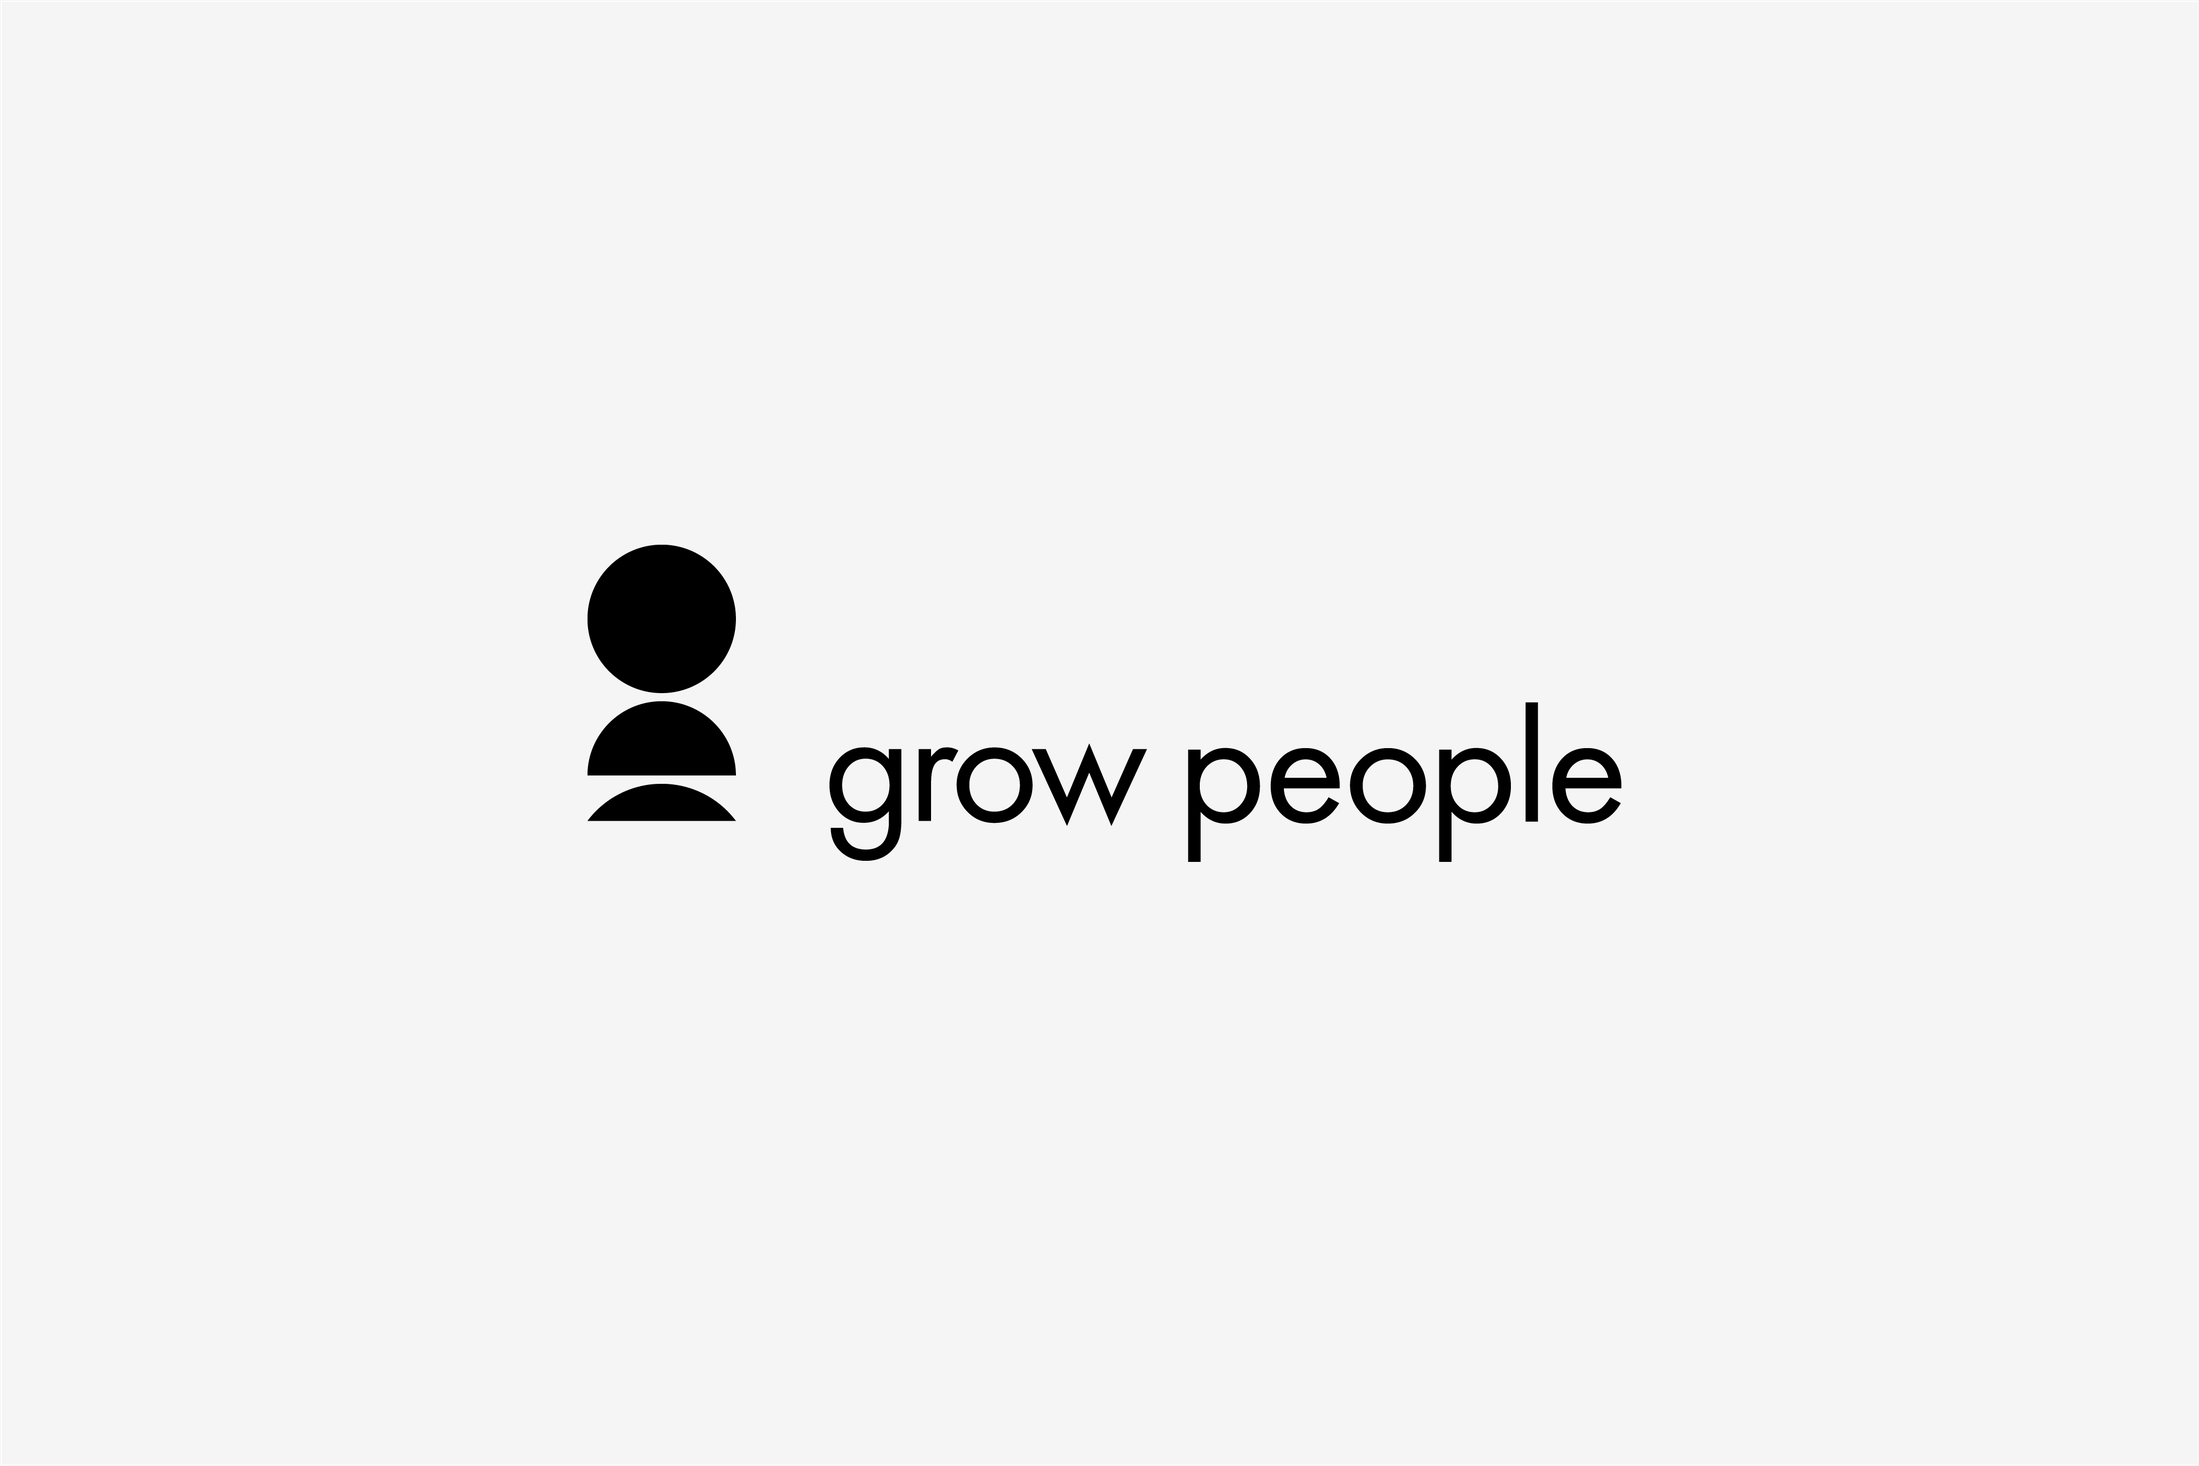 paul_belford_ltd_grow_people_brand_logo_2.png